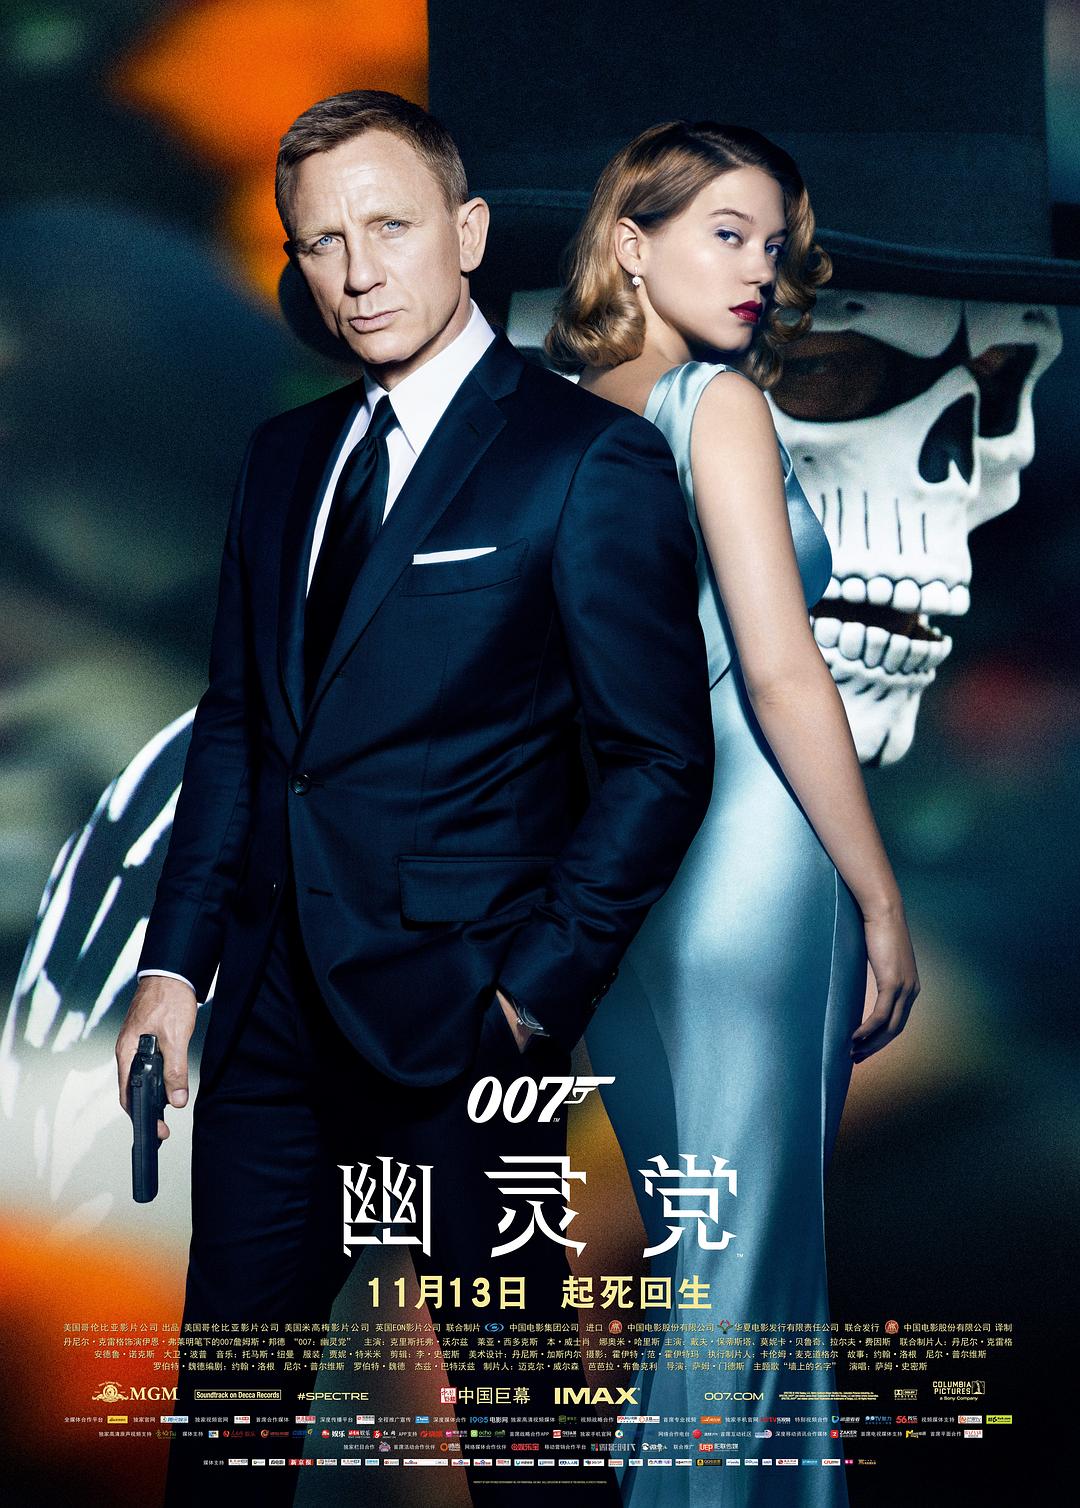 007:鬼魂党/007系列24:大破鬼魂危机 Spectre.2015.2160p.BluRay.HEVC.DTS-HD.MA.7.1-COASTER 61.59GB-1.png